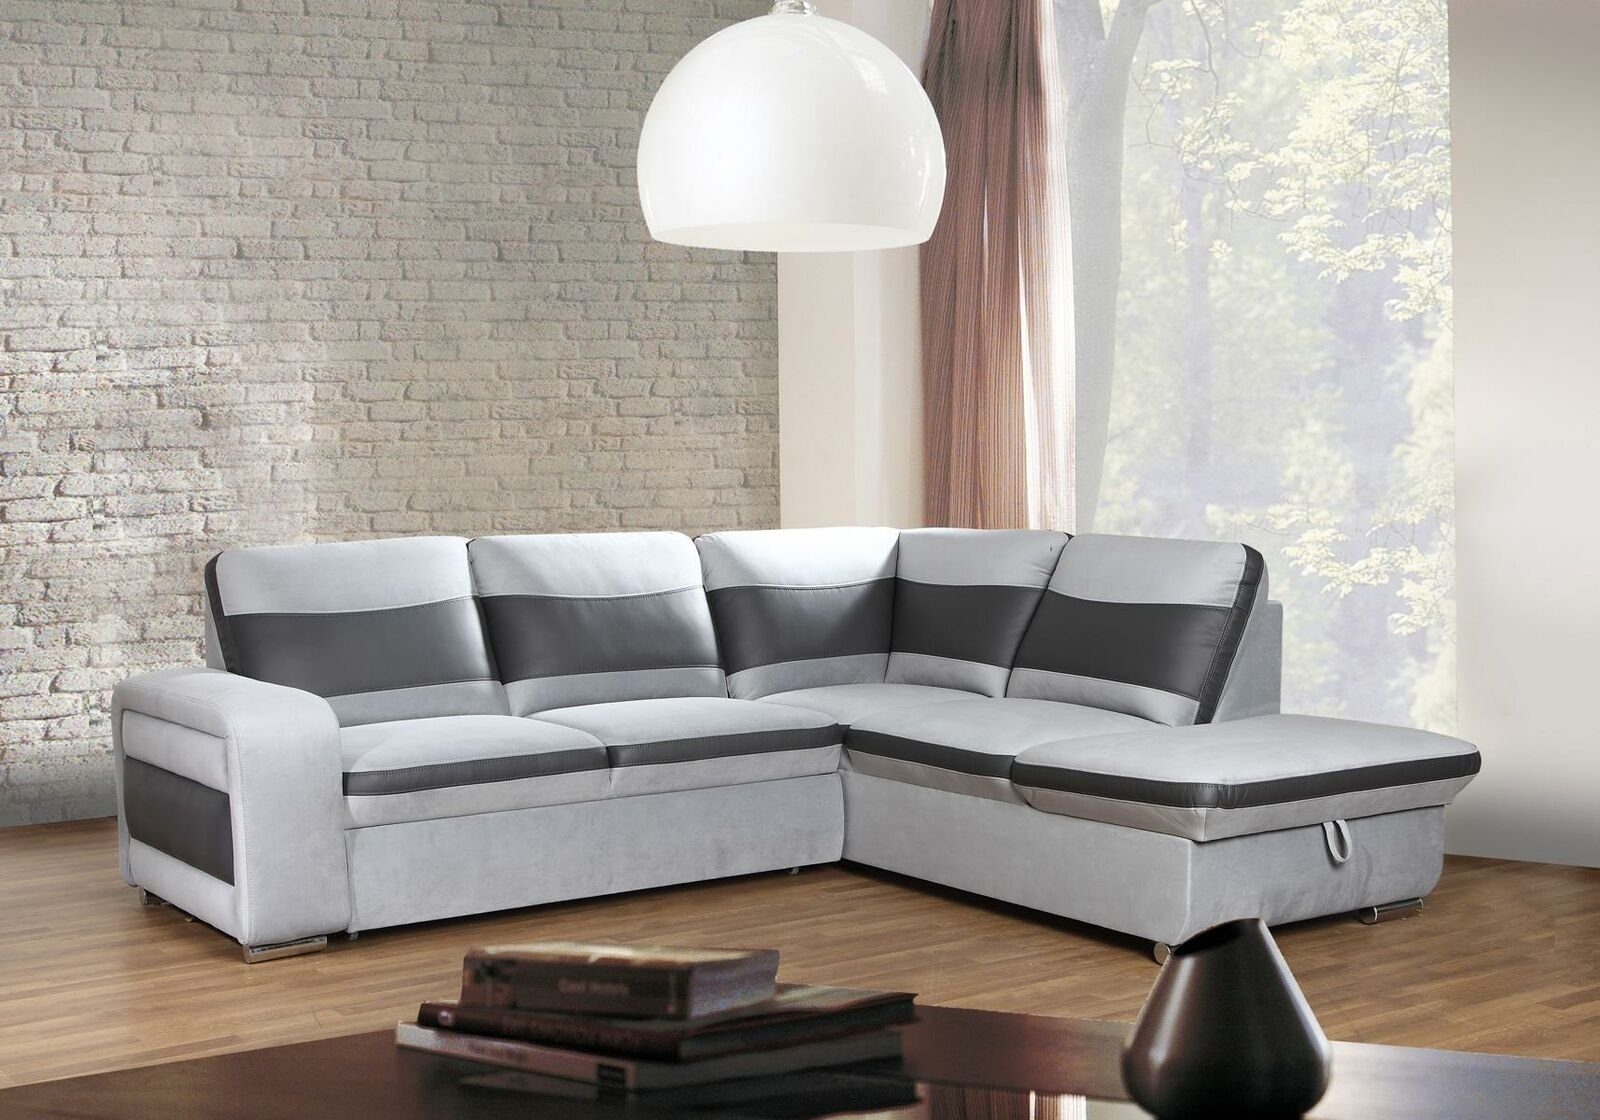 JVmoebel Sofa Weißes in modernes Made Neu, Polstermöbel Ecksofa Luxus Europe Couch